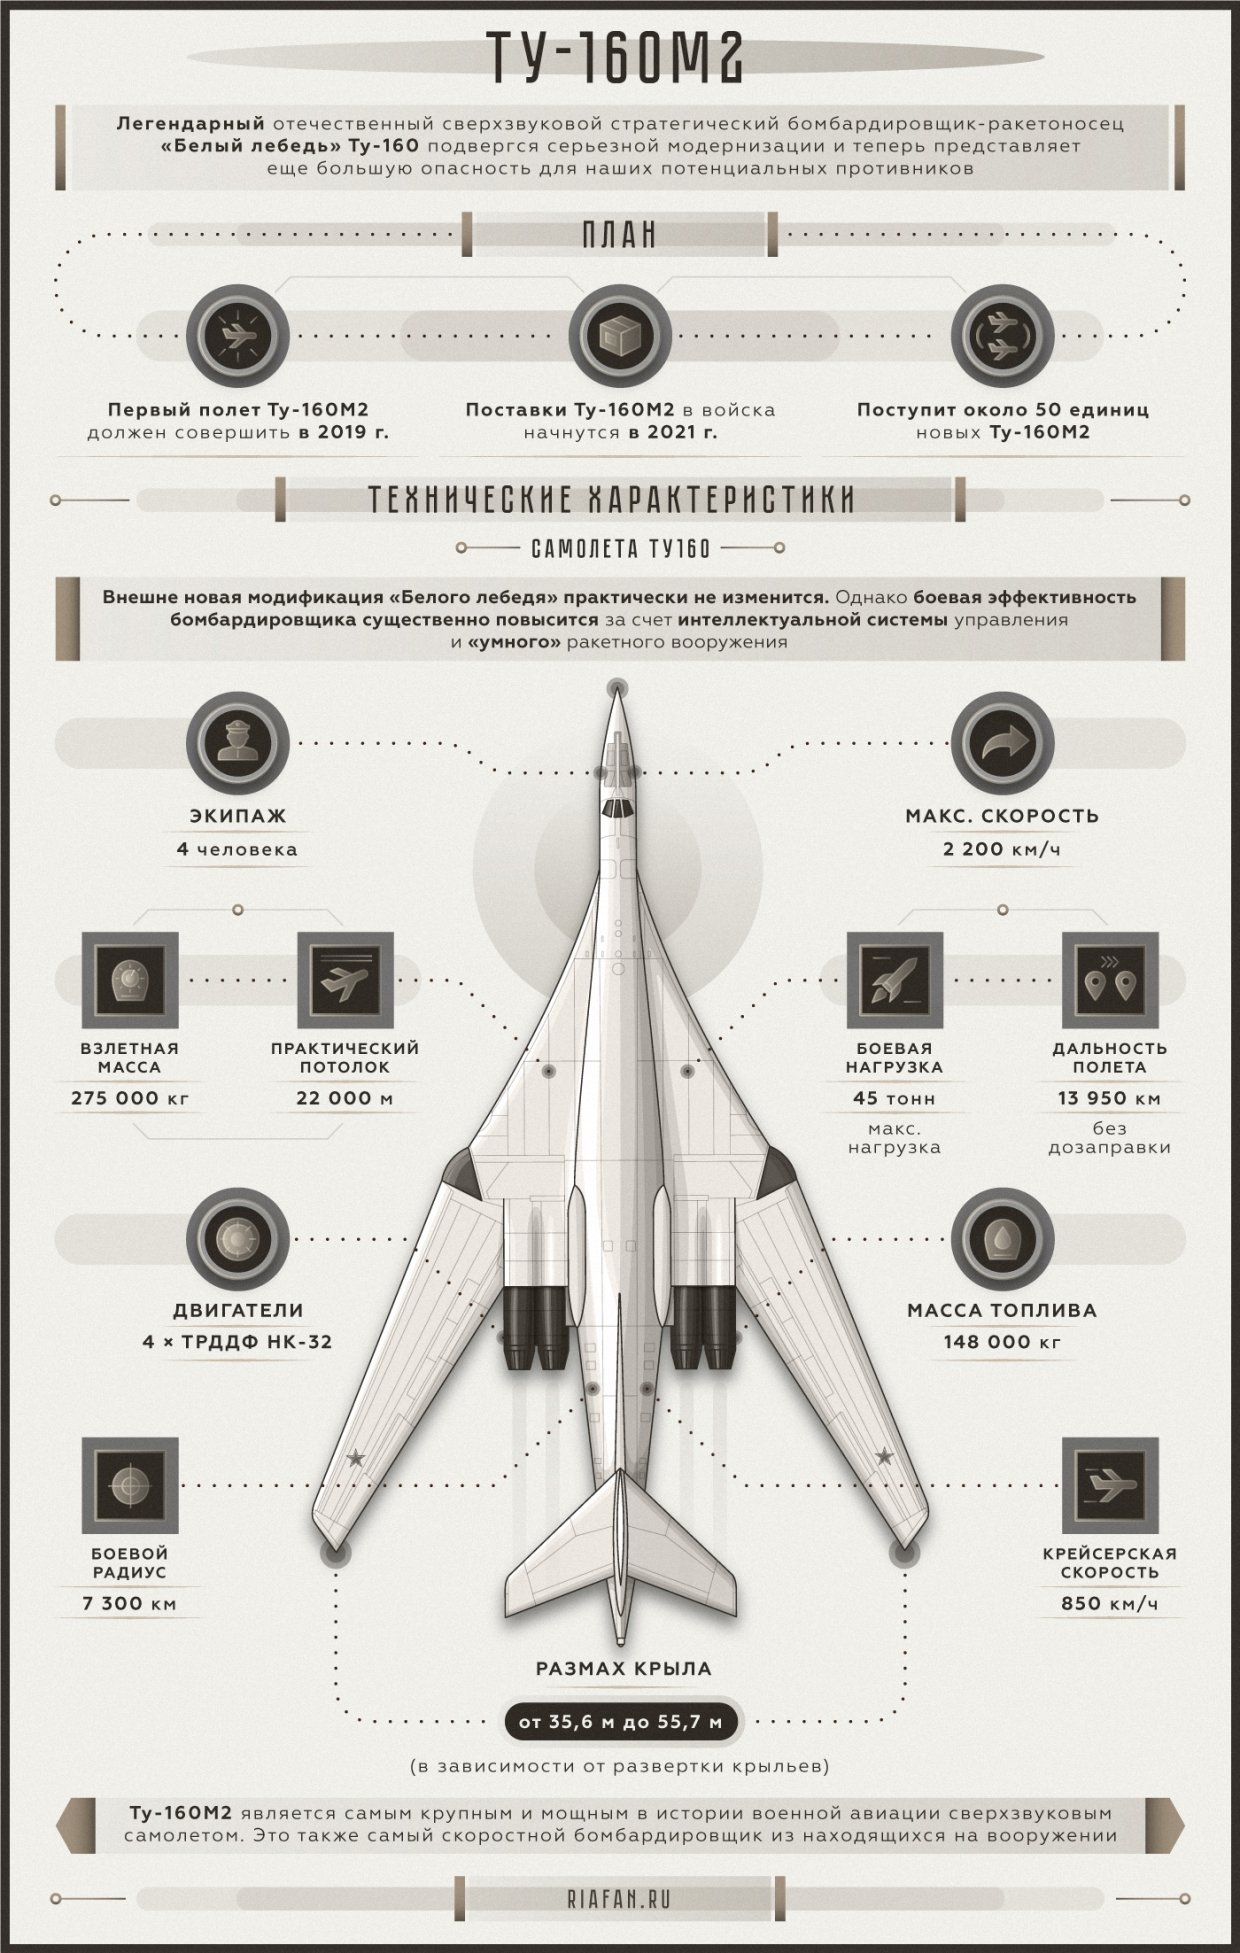 Ту 160 сверхзвуковой характеристики. Ту-160 белый лебедь. Ту-160 сверхзвуковой самолёт. Белый лебедь самолет ту 160 характеристики. Технические характеристики самолета ту 160 белый лебедь.